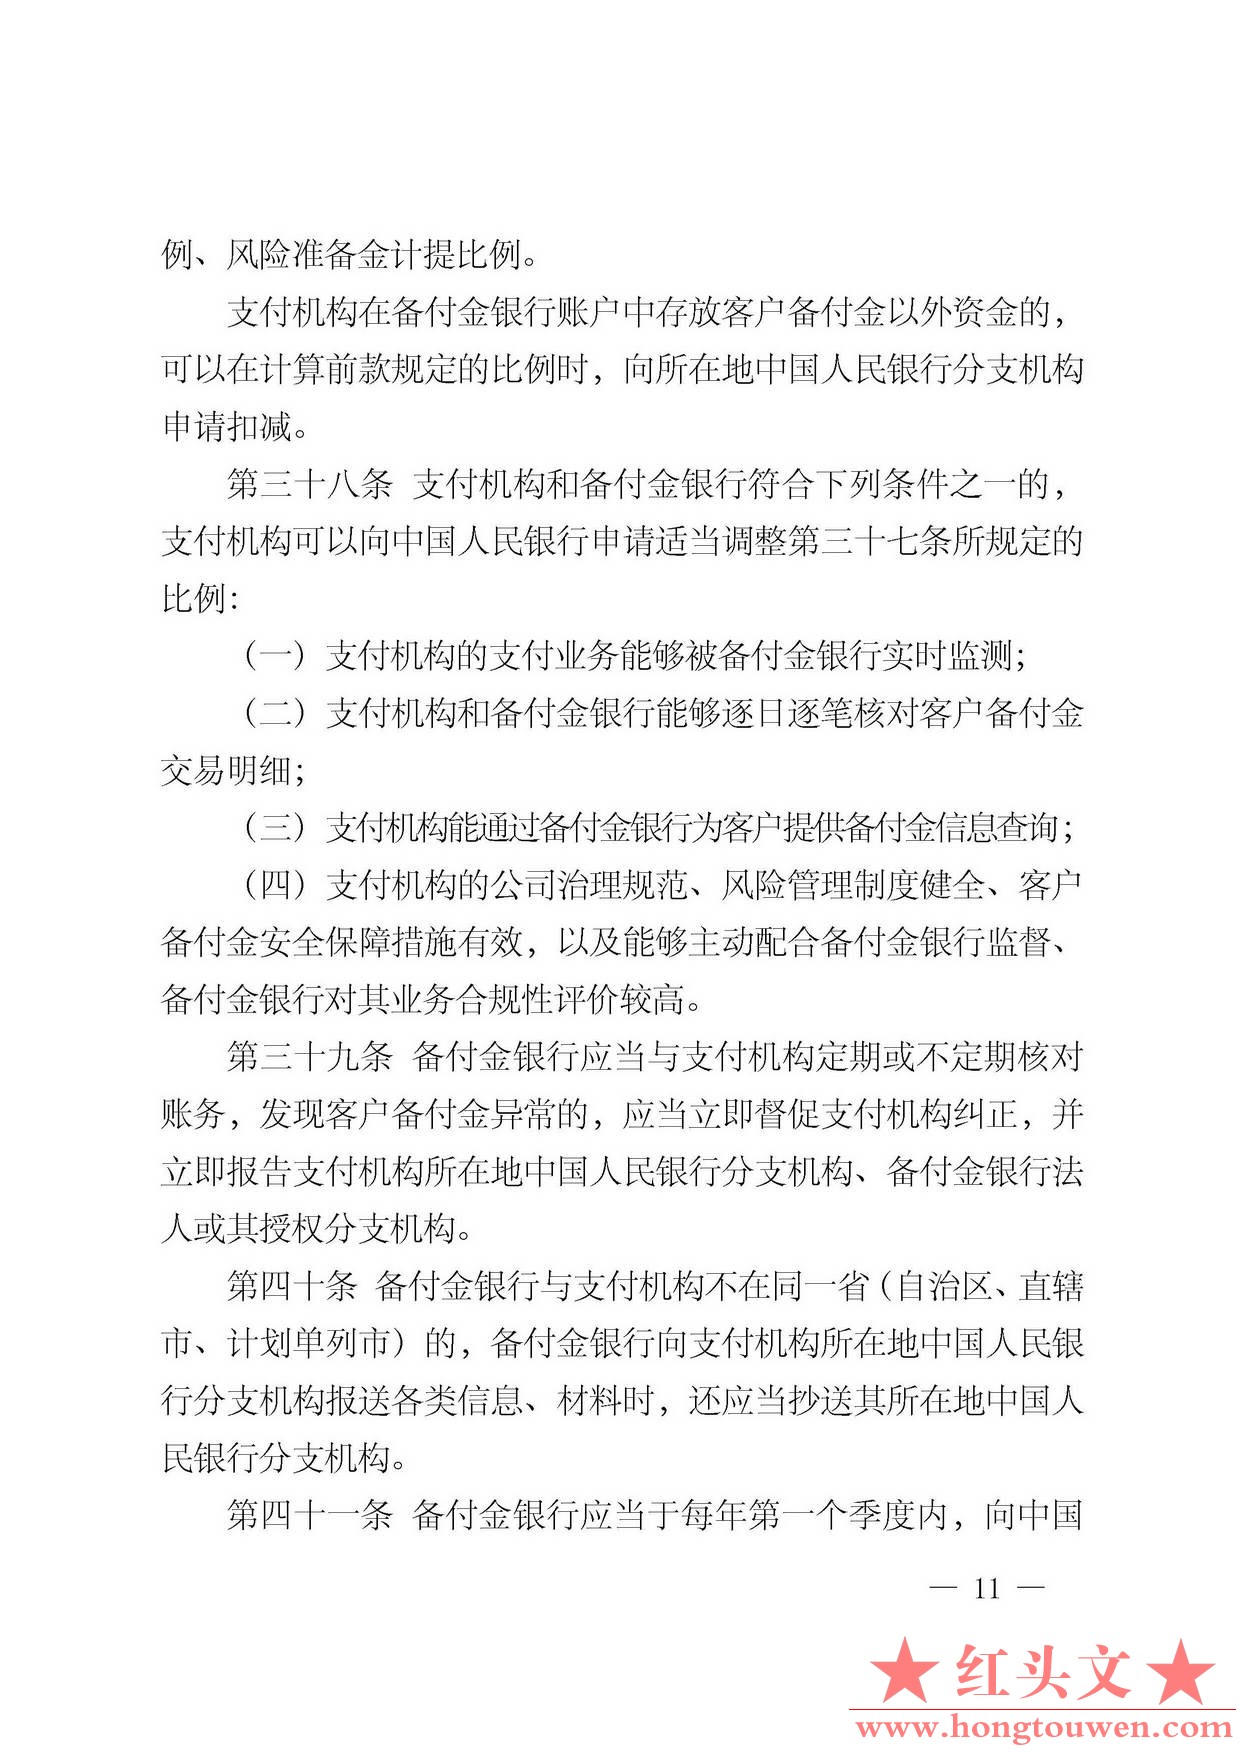 中国人民银行公告[2013]6号-《支付机构客户备付金存管办法》_页面_11.jpg.jpg